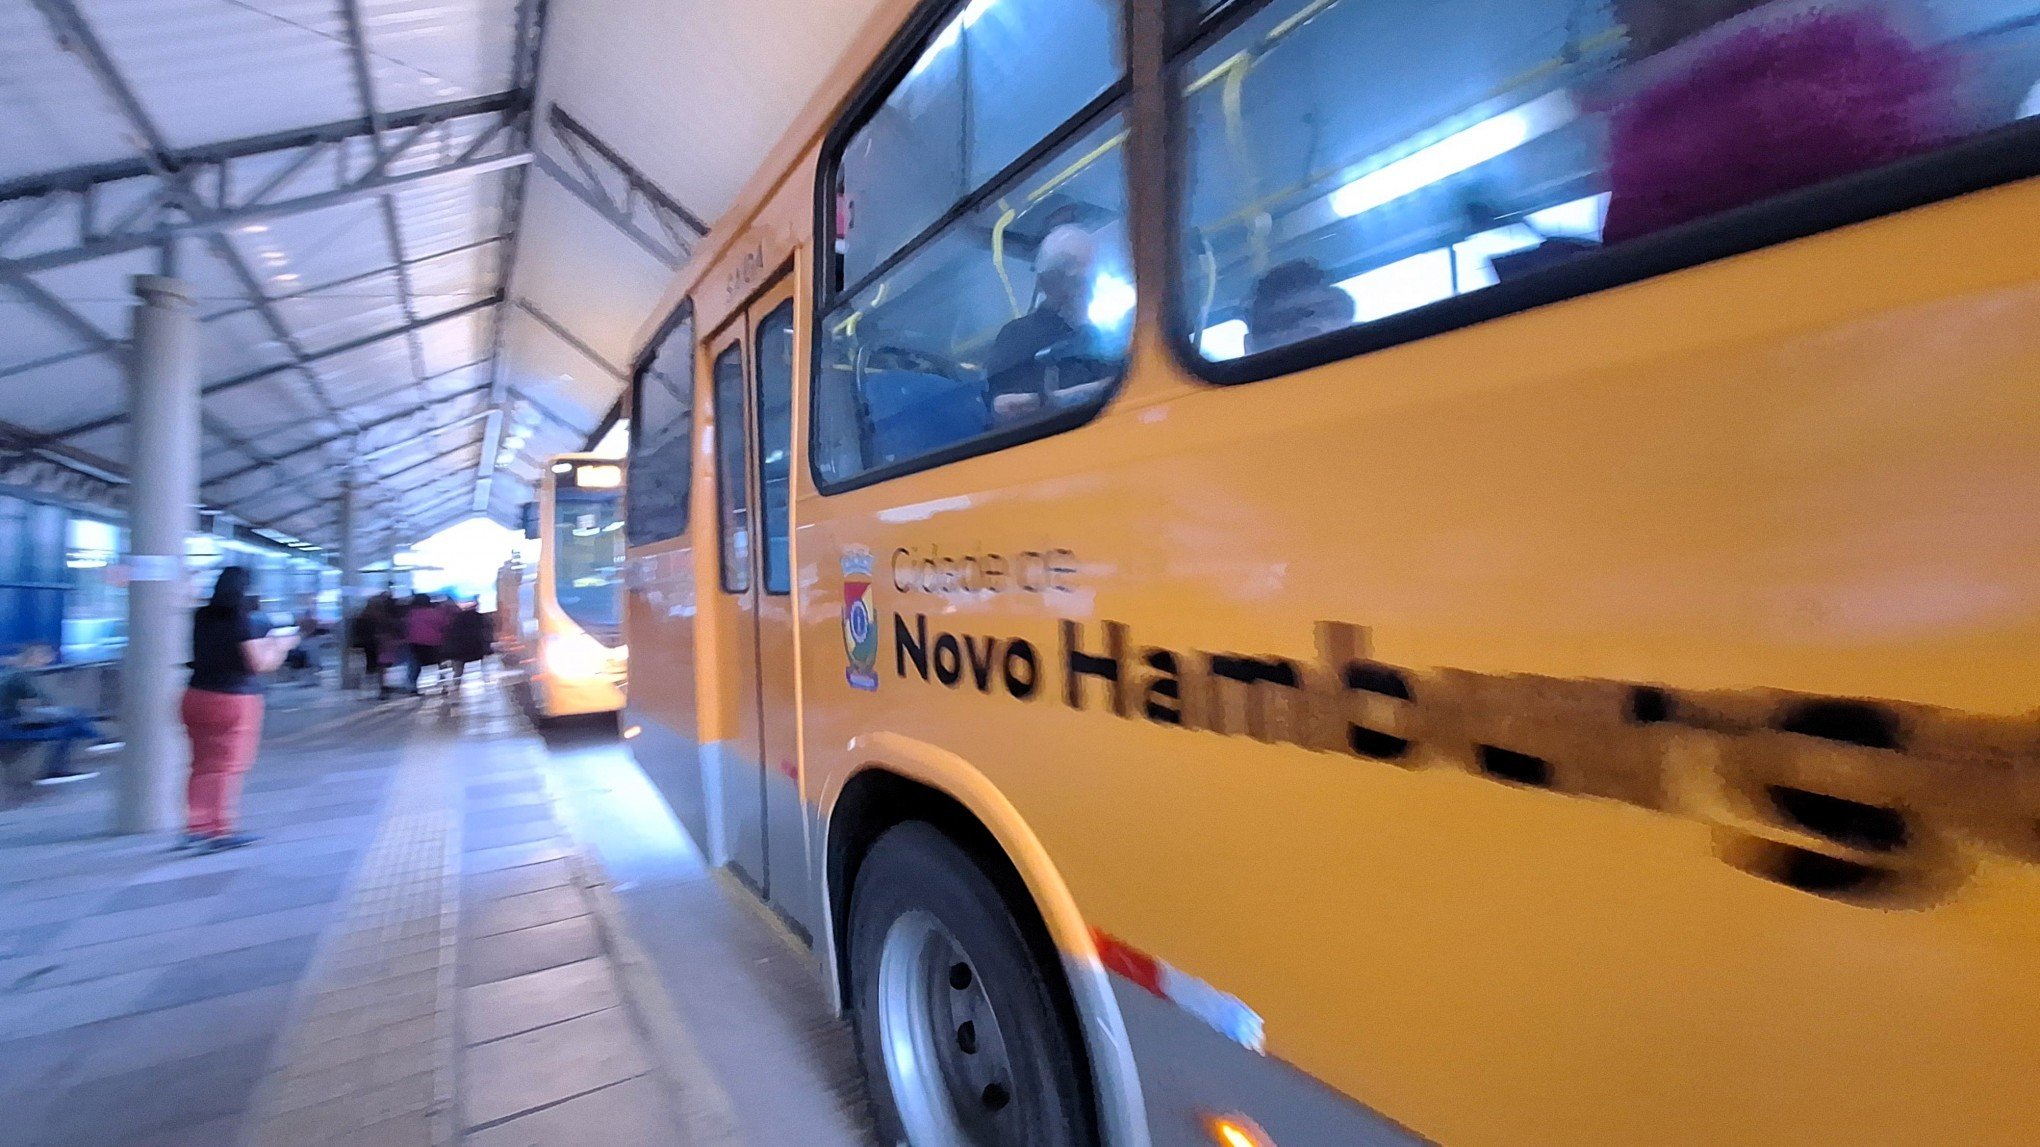 NOVO HAMBURGO: Ministério Público instaura investigação para apurar caos no transporte público